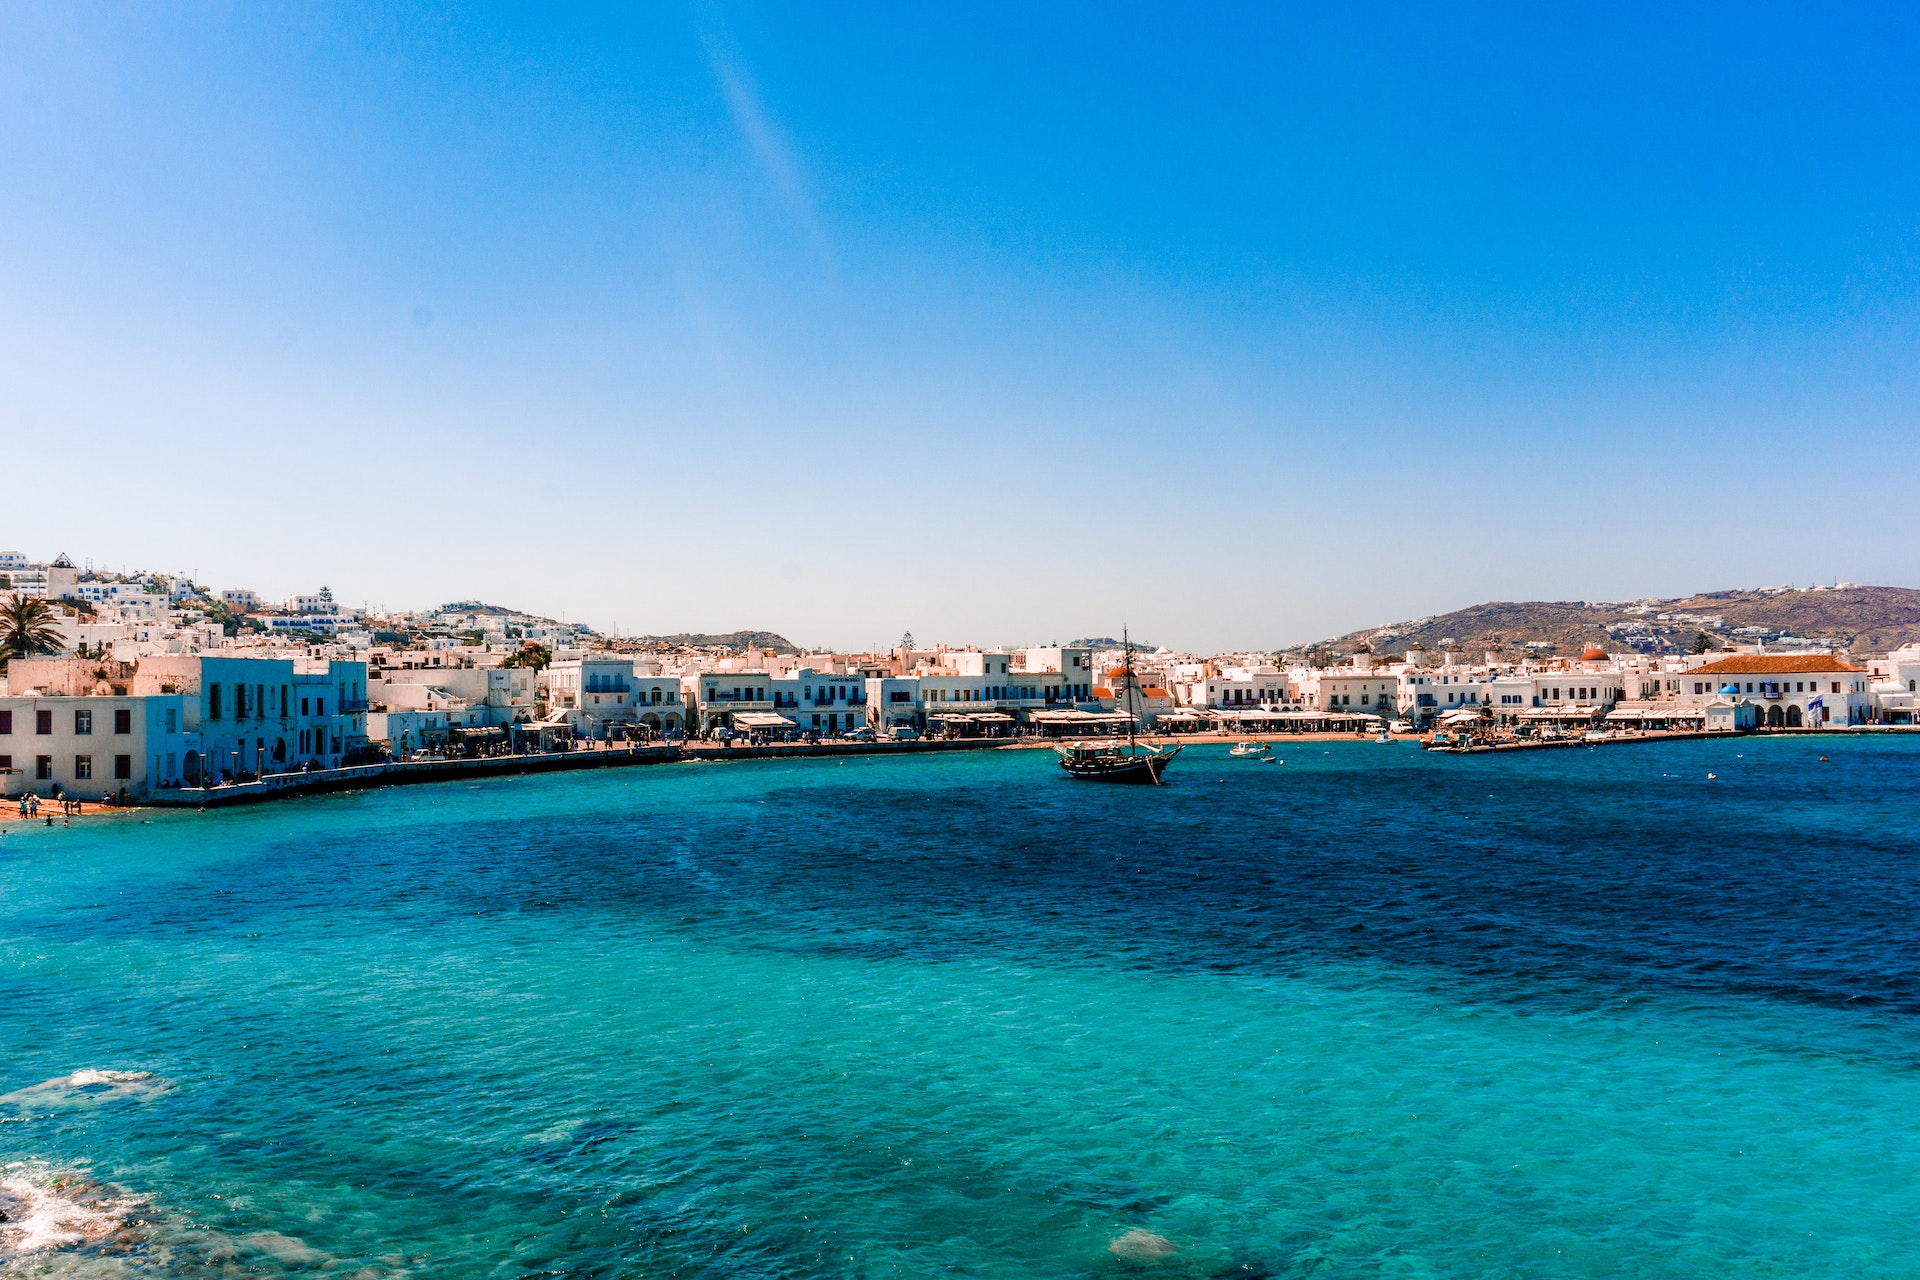 Αυτός είναι ο Νο 1 διεθνής καλοκαιρινός ταξιδιωτικός προορισμός στο Airbnb και ναι, είναι ελληνικός